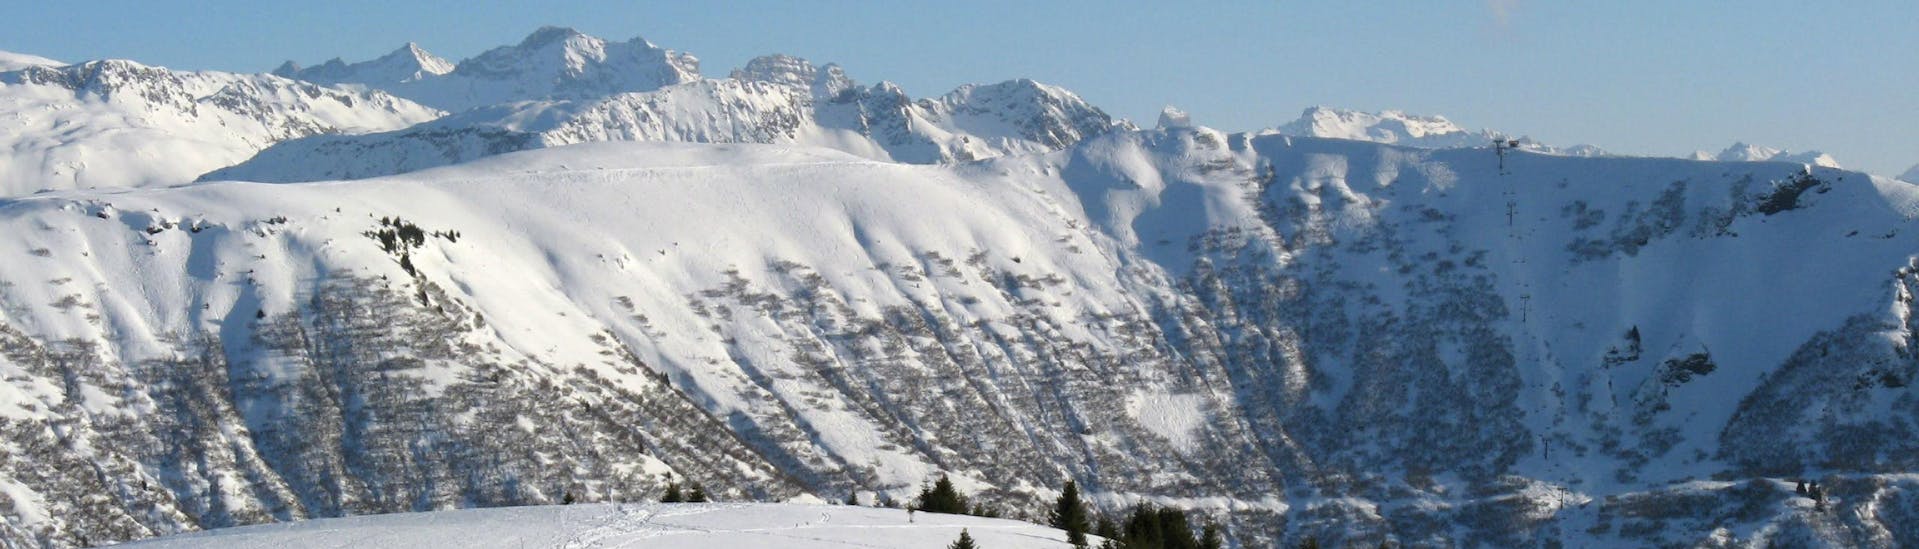 Une vue panoramique des pistes de ski de l'Espace Diamant, un domain skiable française nichée entre les majestueux sommets du département de la Savoie, où les écoles de ski locales offrent un large choix de cours de ski.